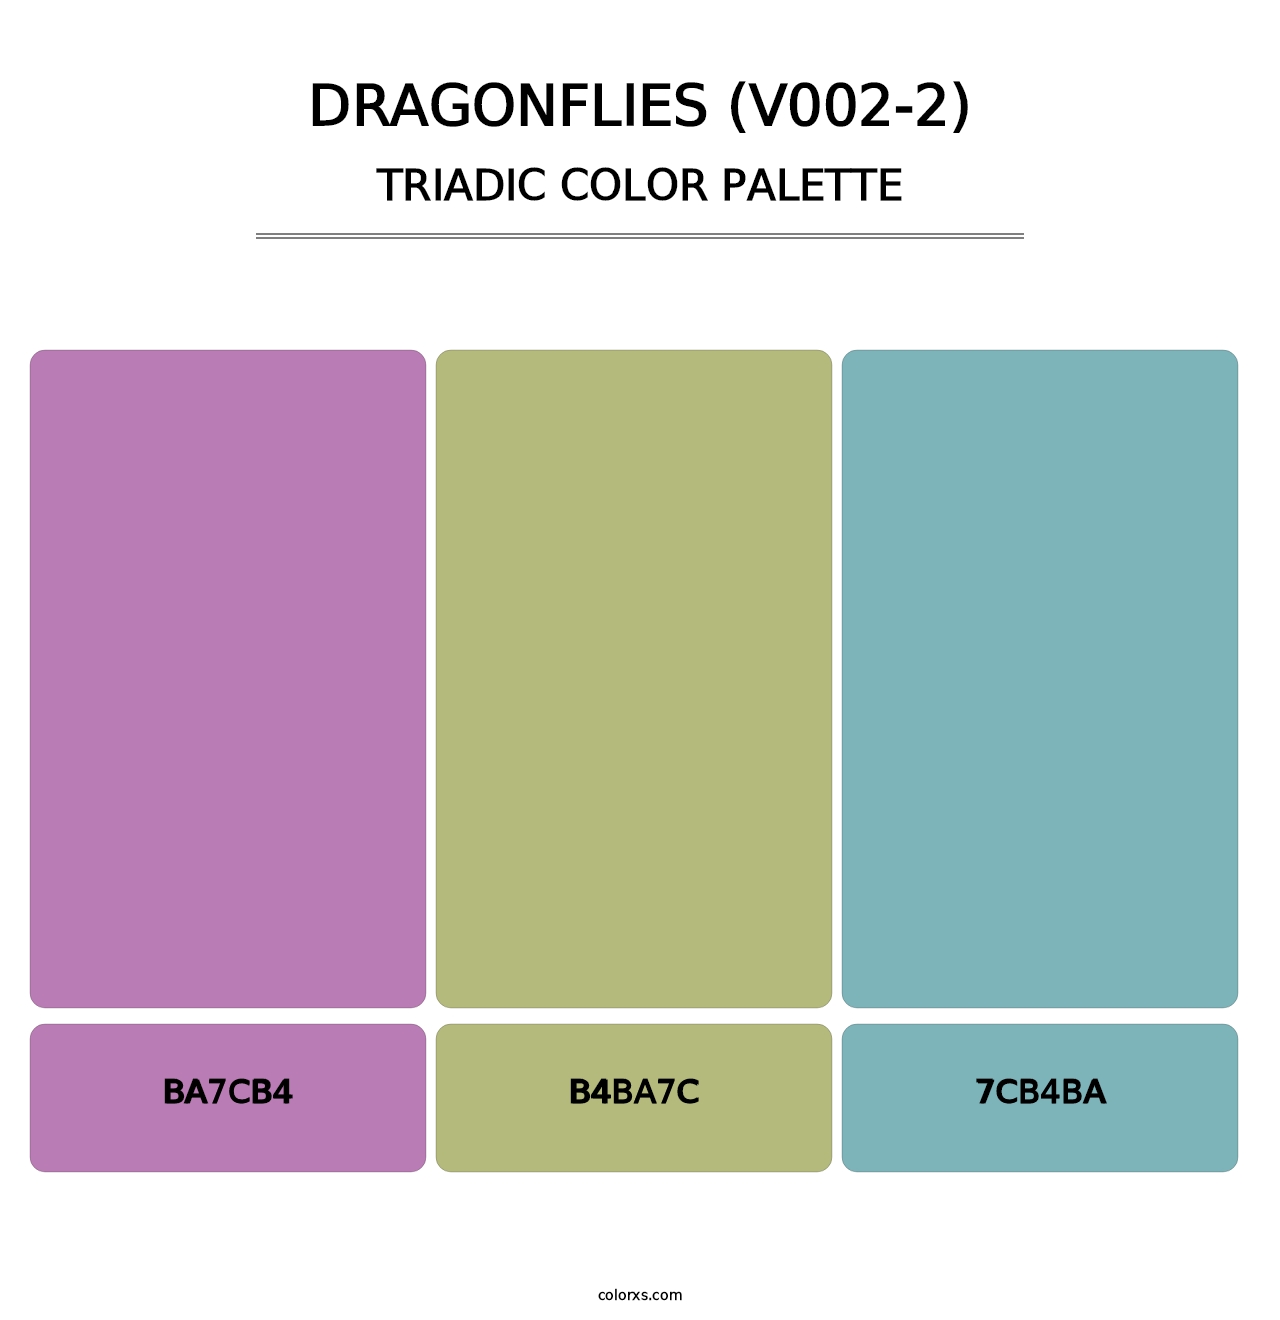 Dragonflies (V002-2) - Triadic Color Palette